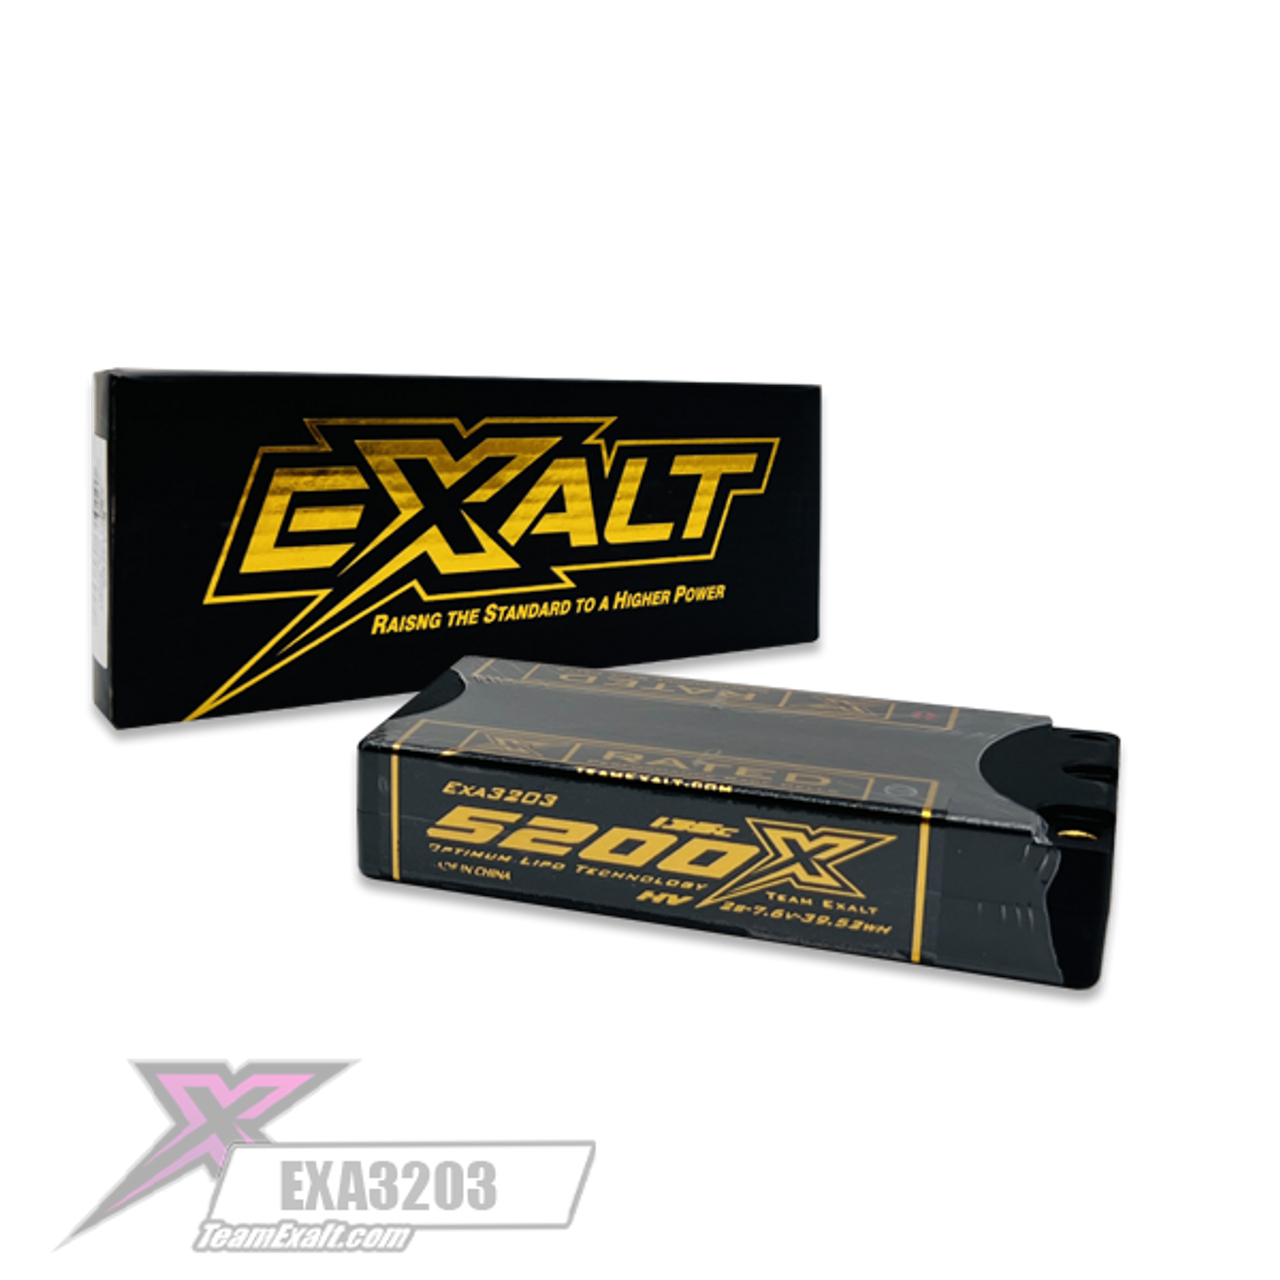 Exalt X-Rated 2S 135C LCG Hardcase Shorty Lipo Battery (7.6V/5200mAh) w/5mm Bullets (EXA3203)